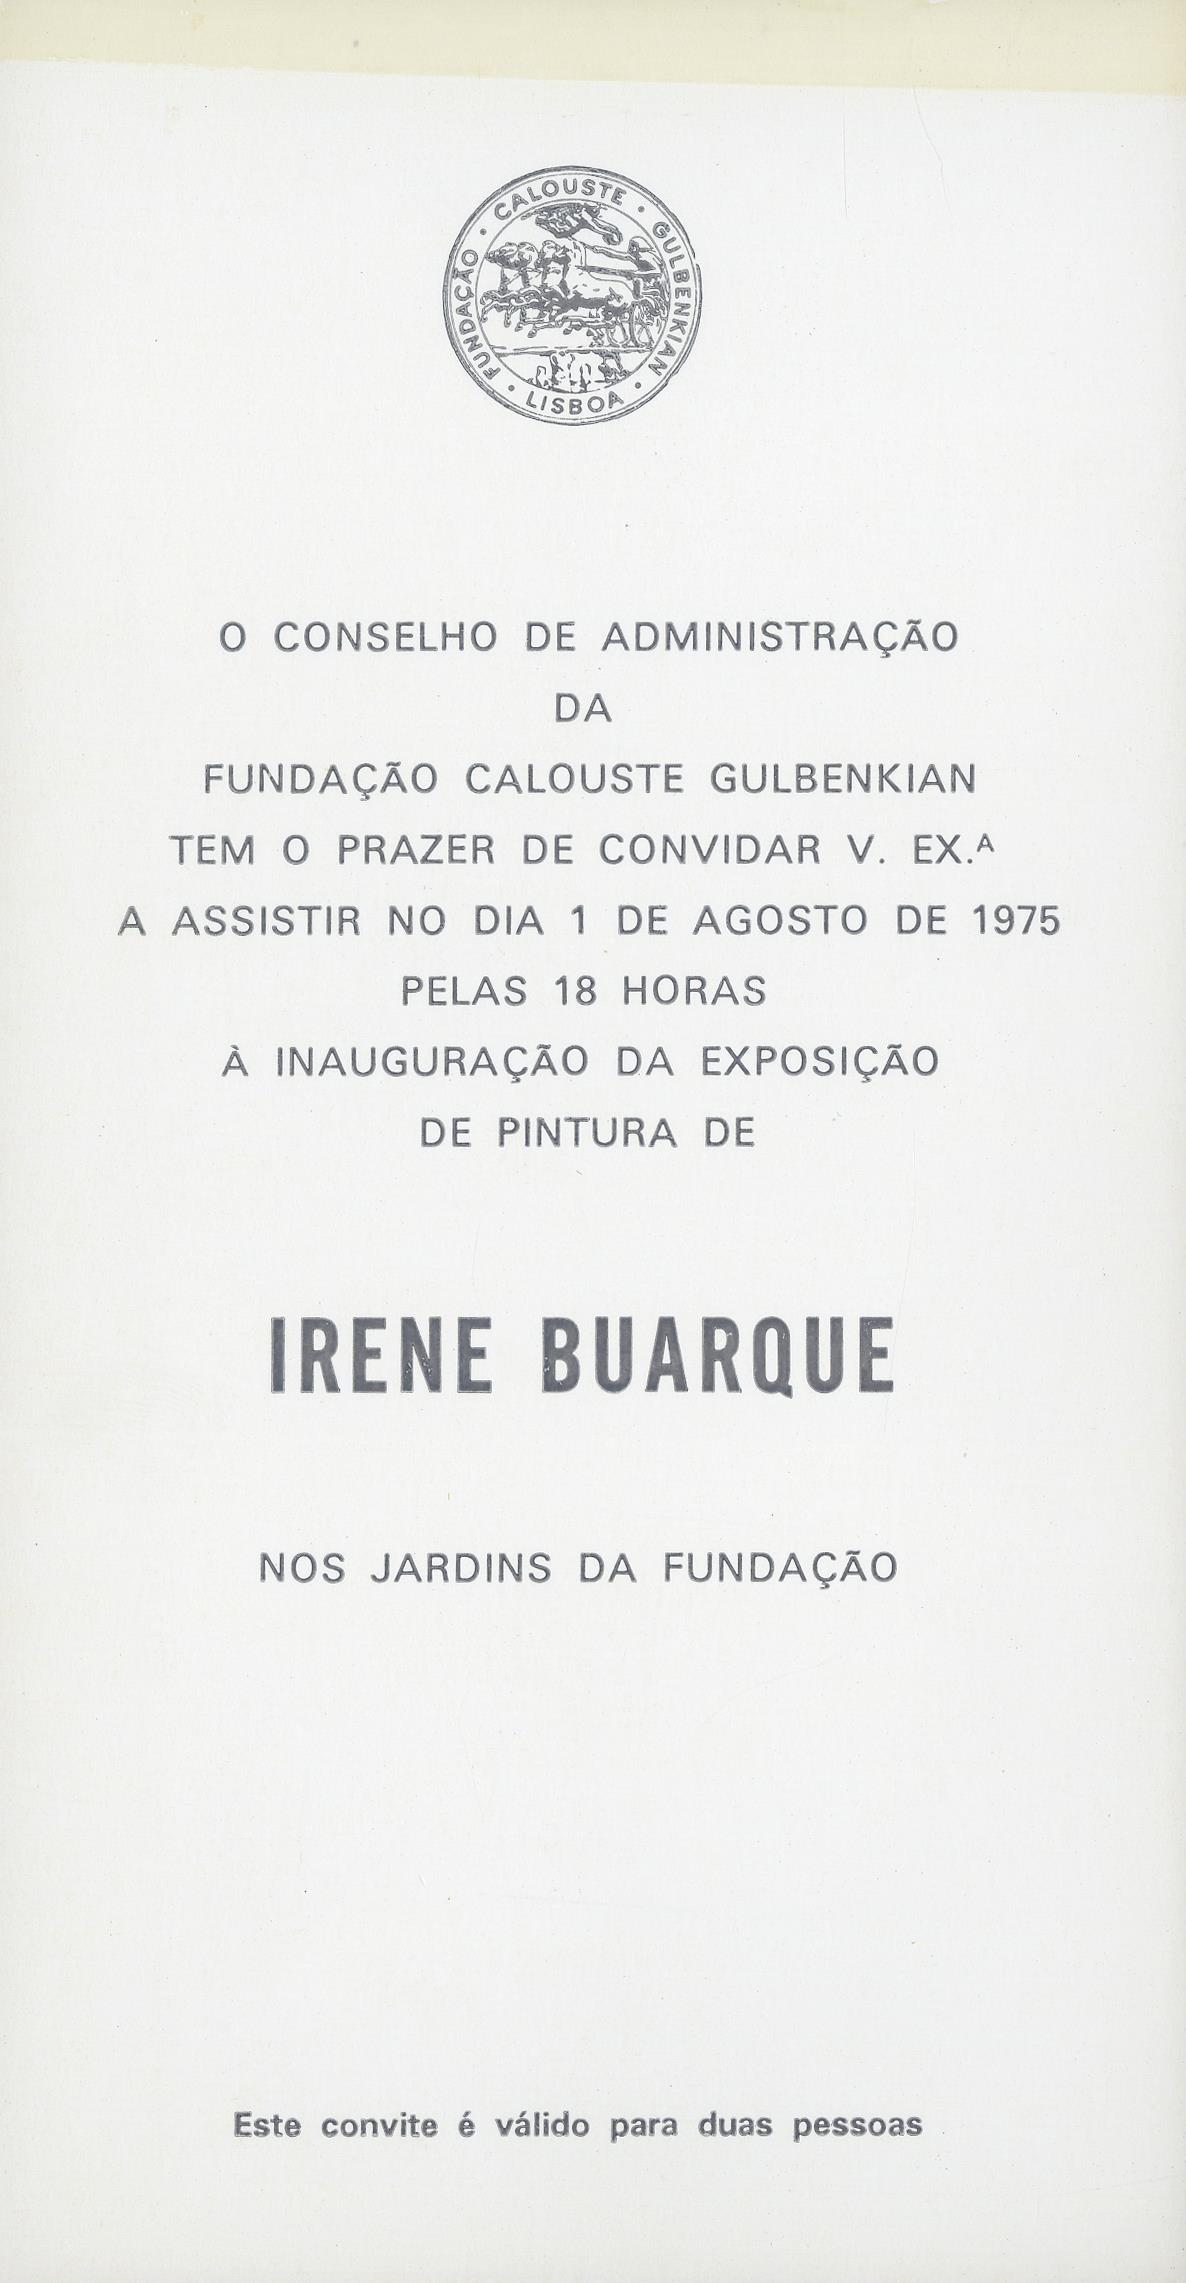 Irene Buarque